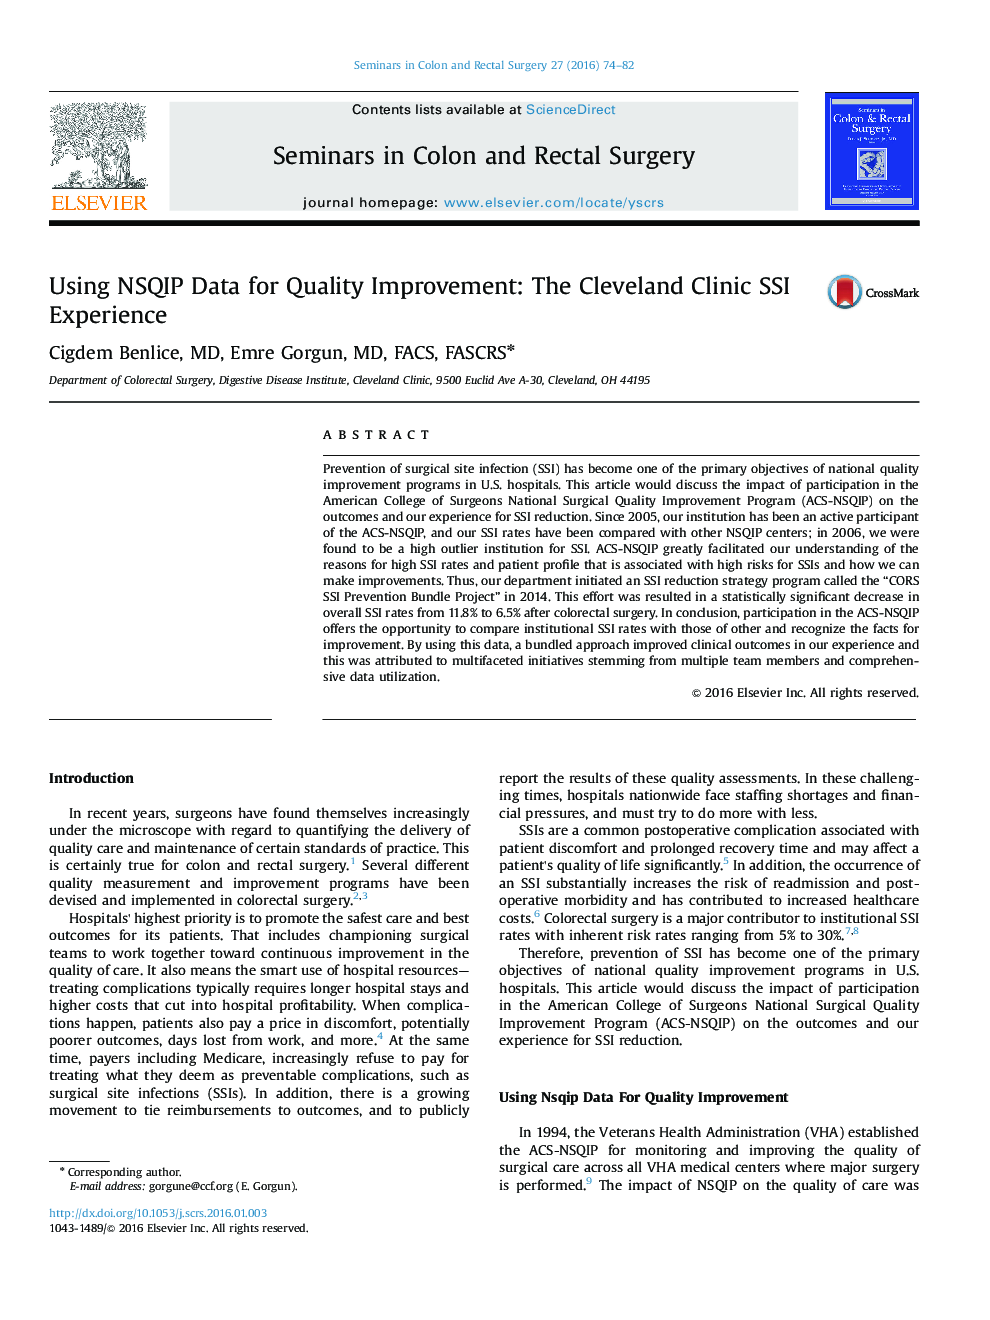 استفاده از داده های NSQIP برای بهبود کیفیت: تجربه SSI بالینی کلیولند 